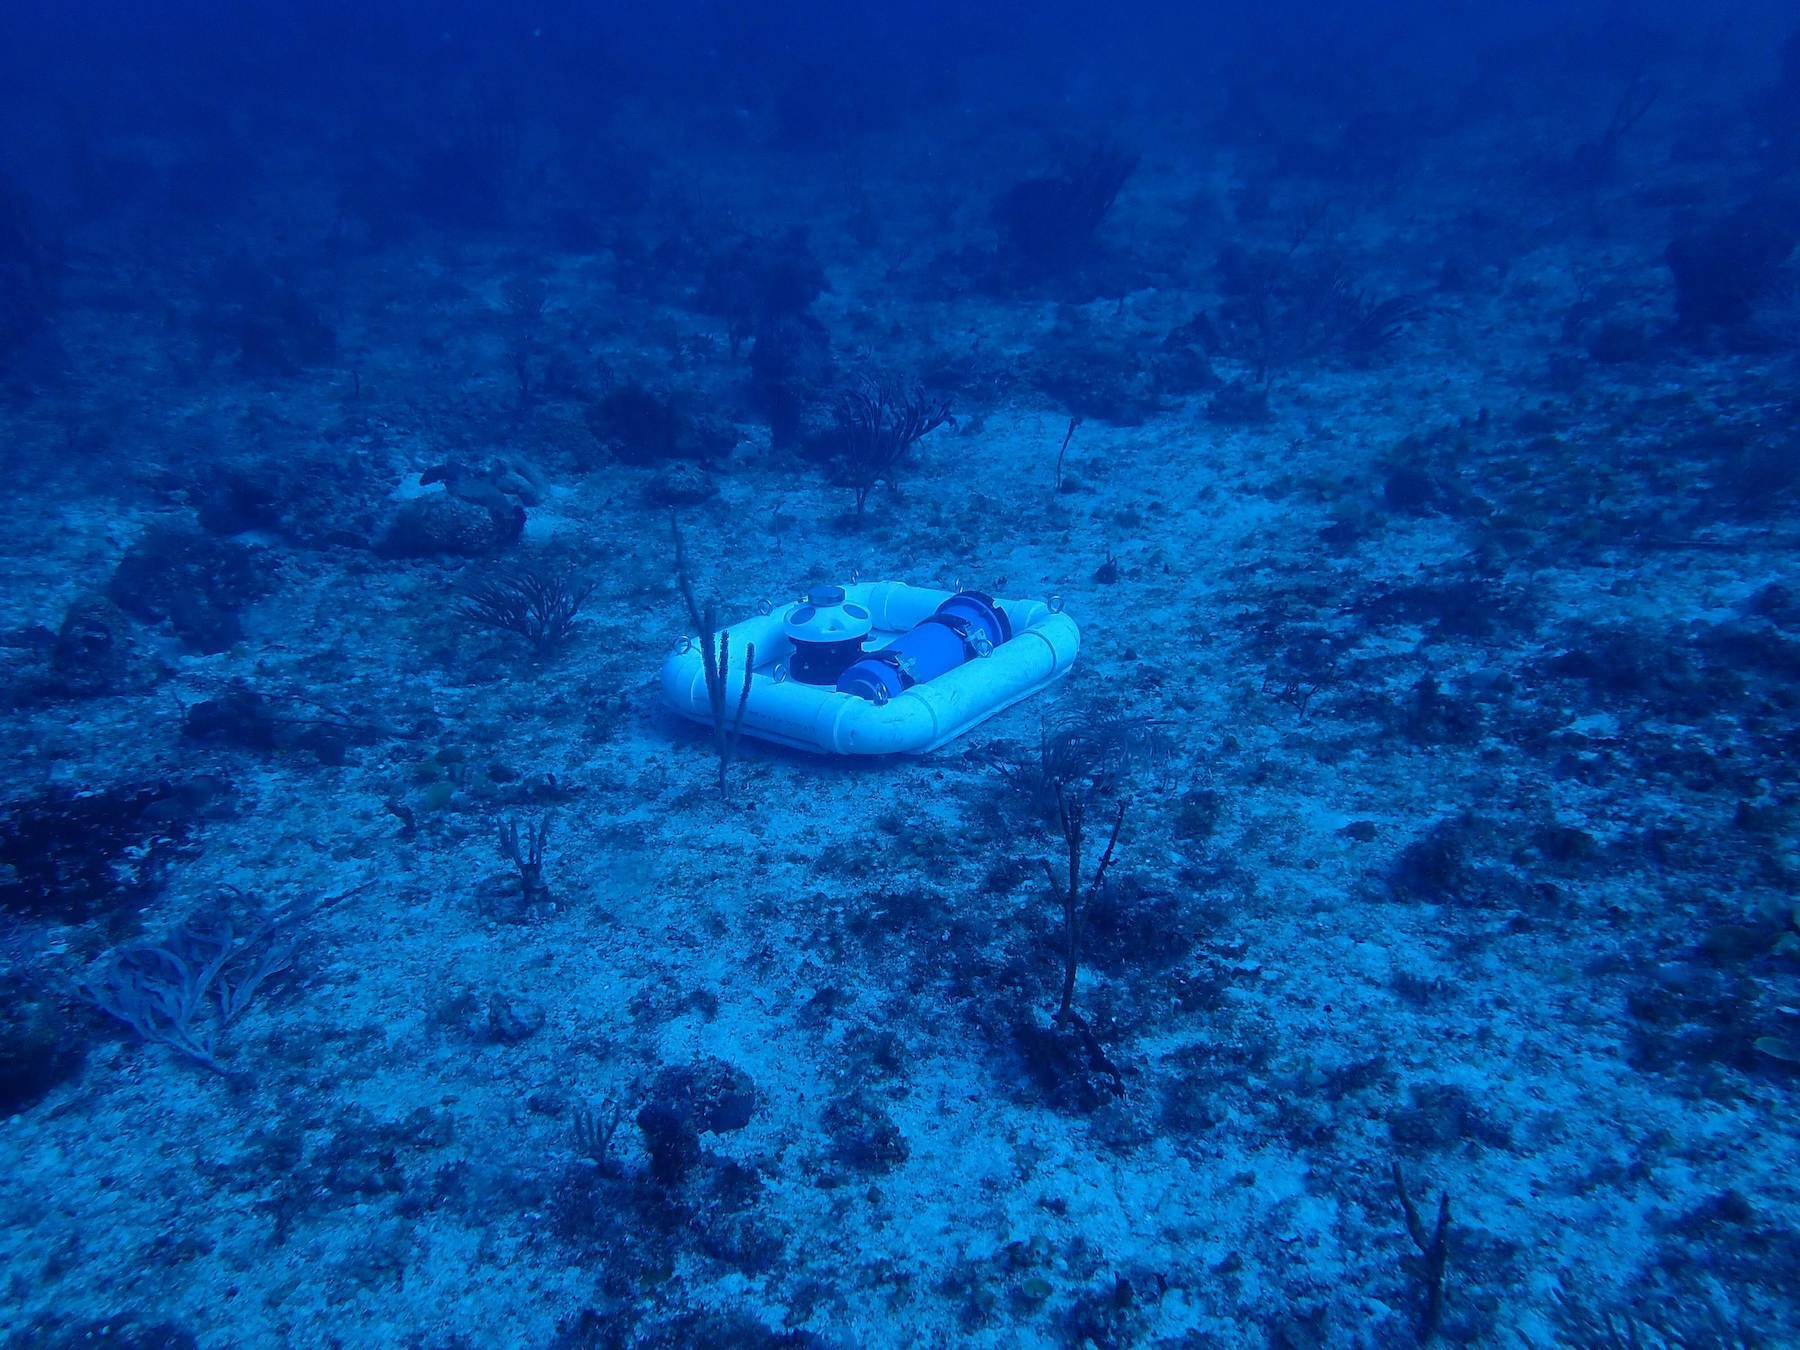 Nortek instrument deployed under the water